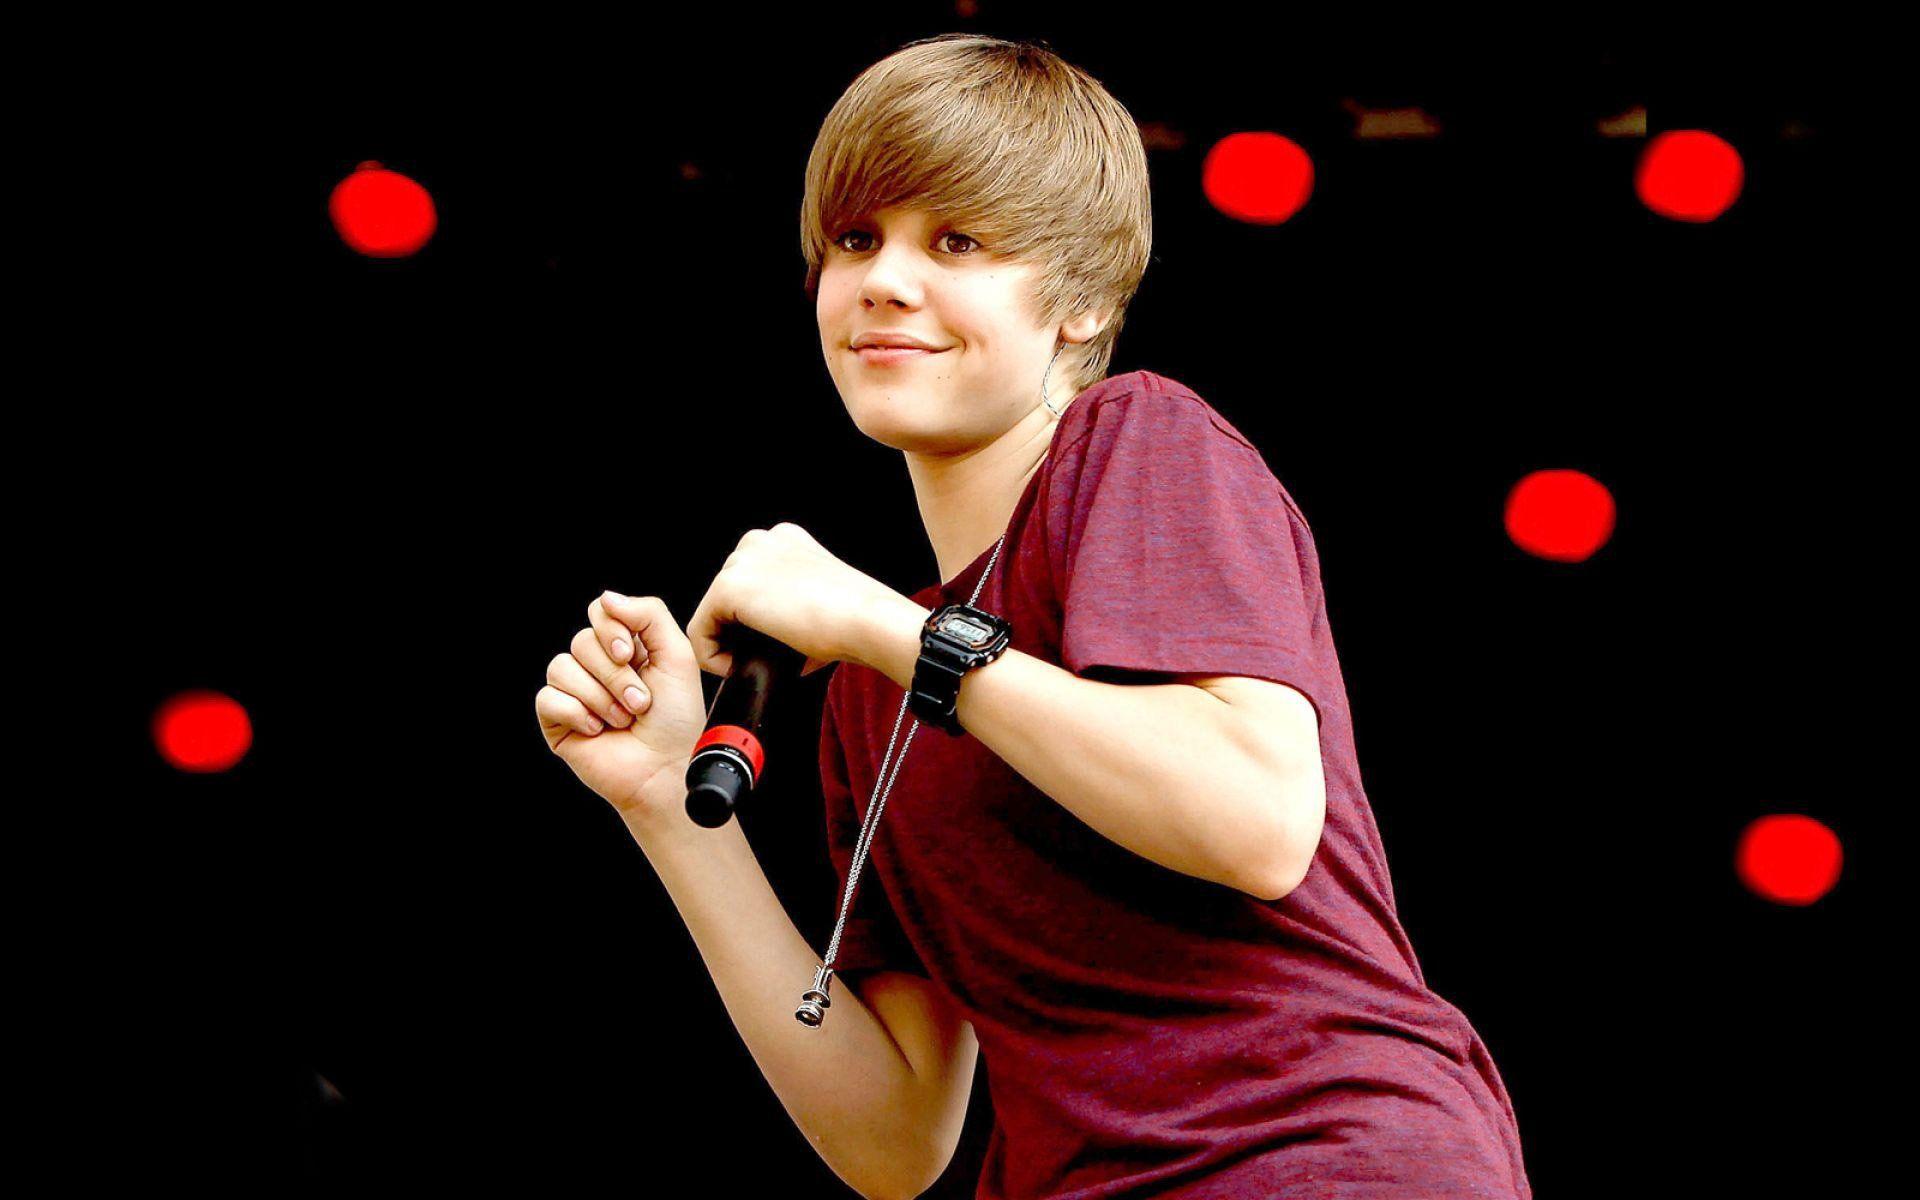 Justin Bieber Cute Picture 2012